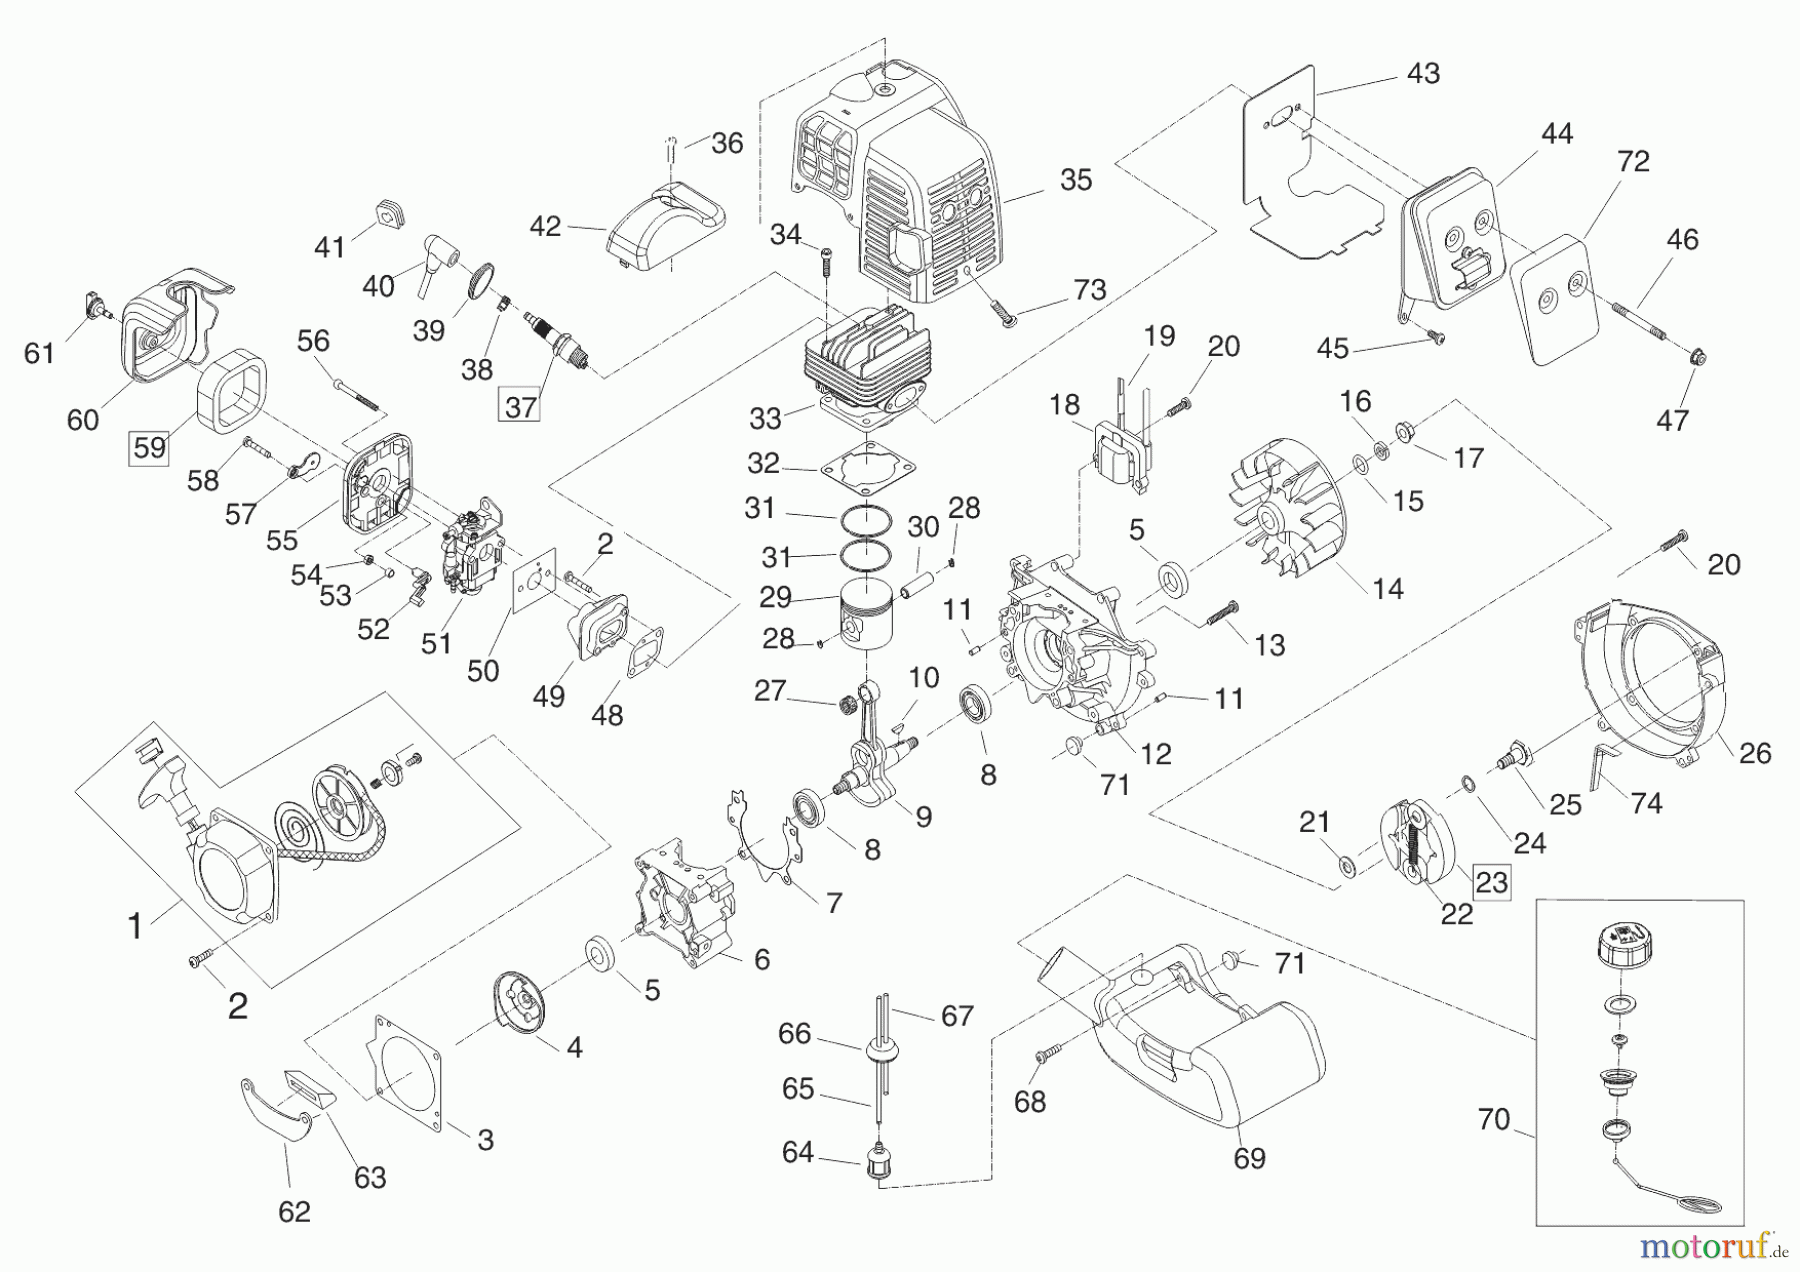  AL-KO Gartentechnik Motorsensen BC 4125